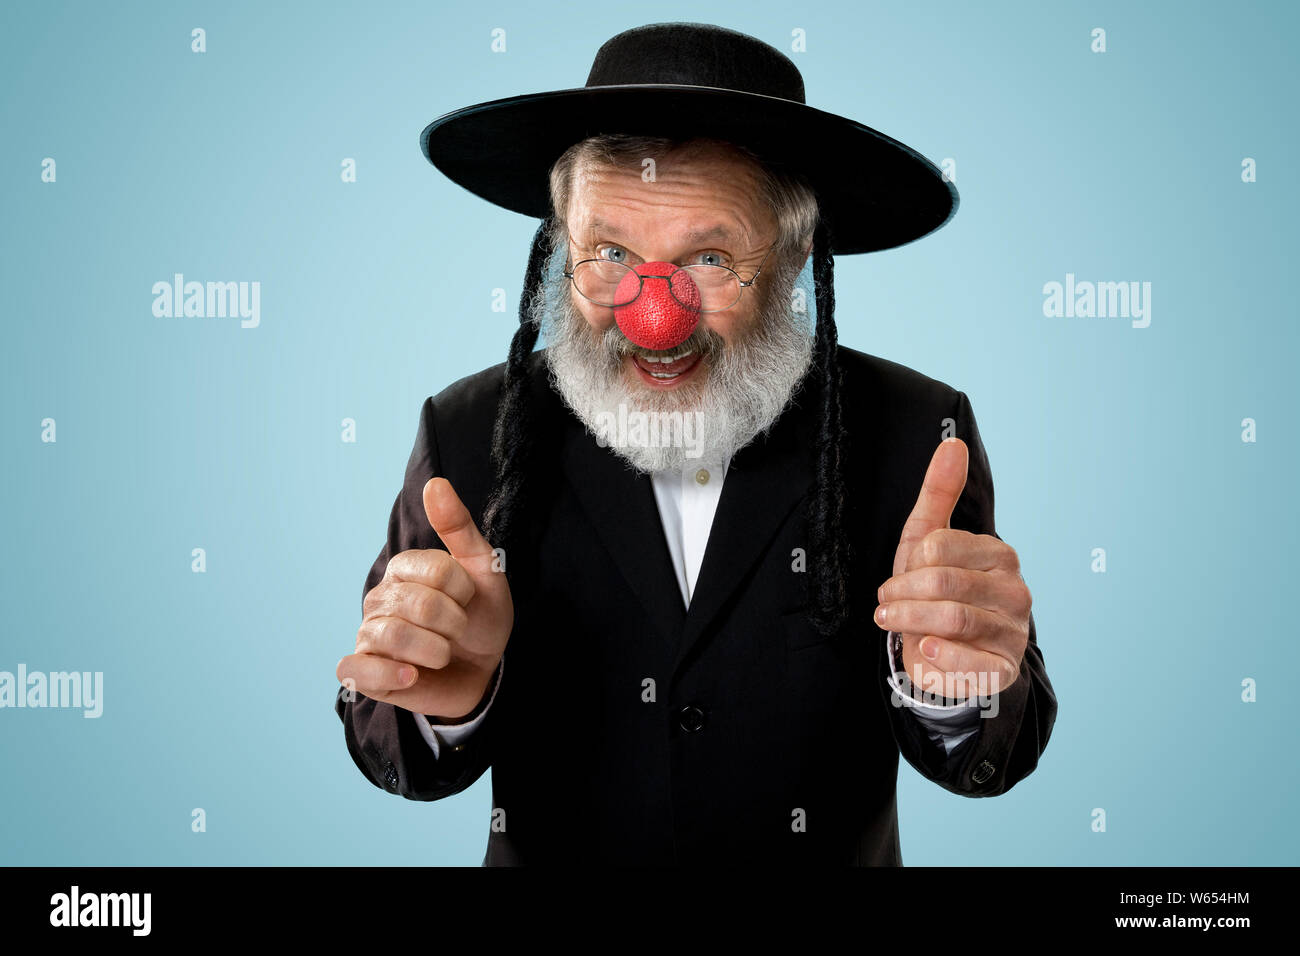 Portrait eines älteren jüdischen Mann feiert red nose day. Purim, Festival, Urlaub, Feier, Judentum, Religion, menschliche Emotionen Konzept. Alter Mann lächelnd auf Blau studio Hintergrund. Stockfoto